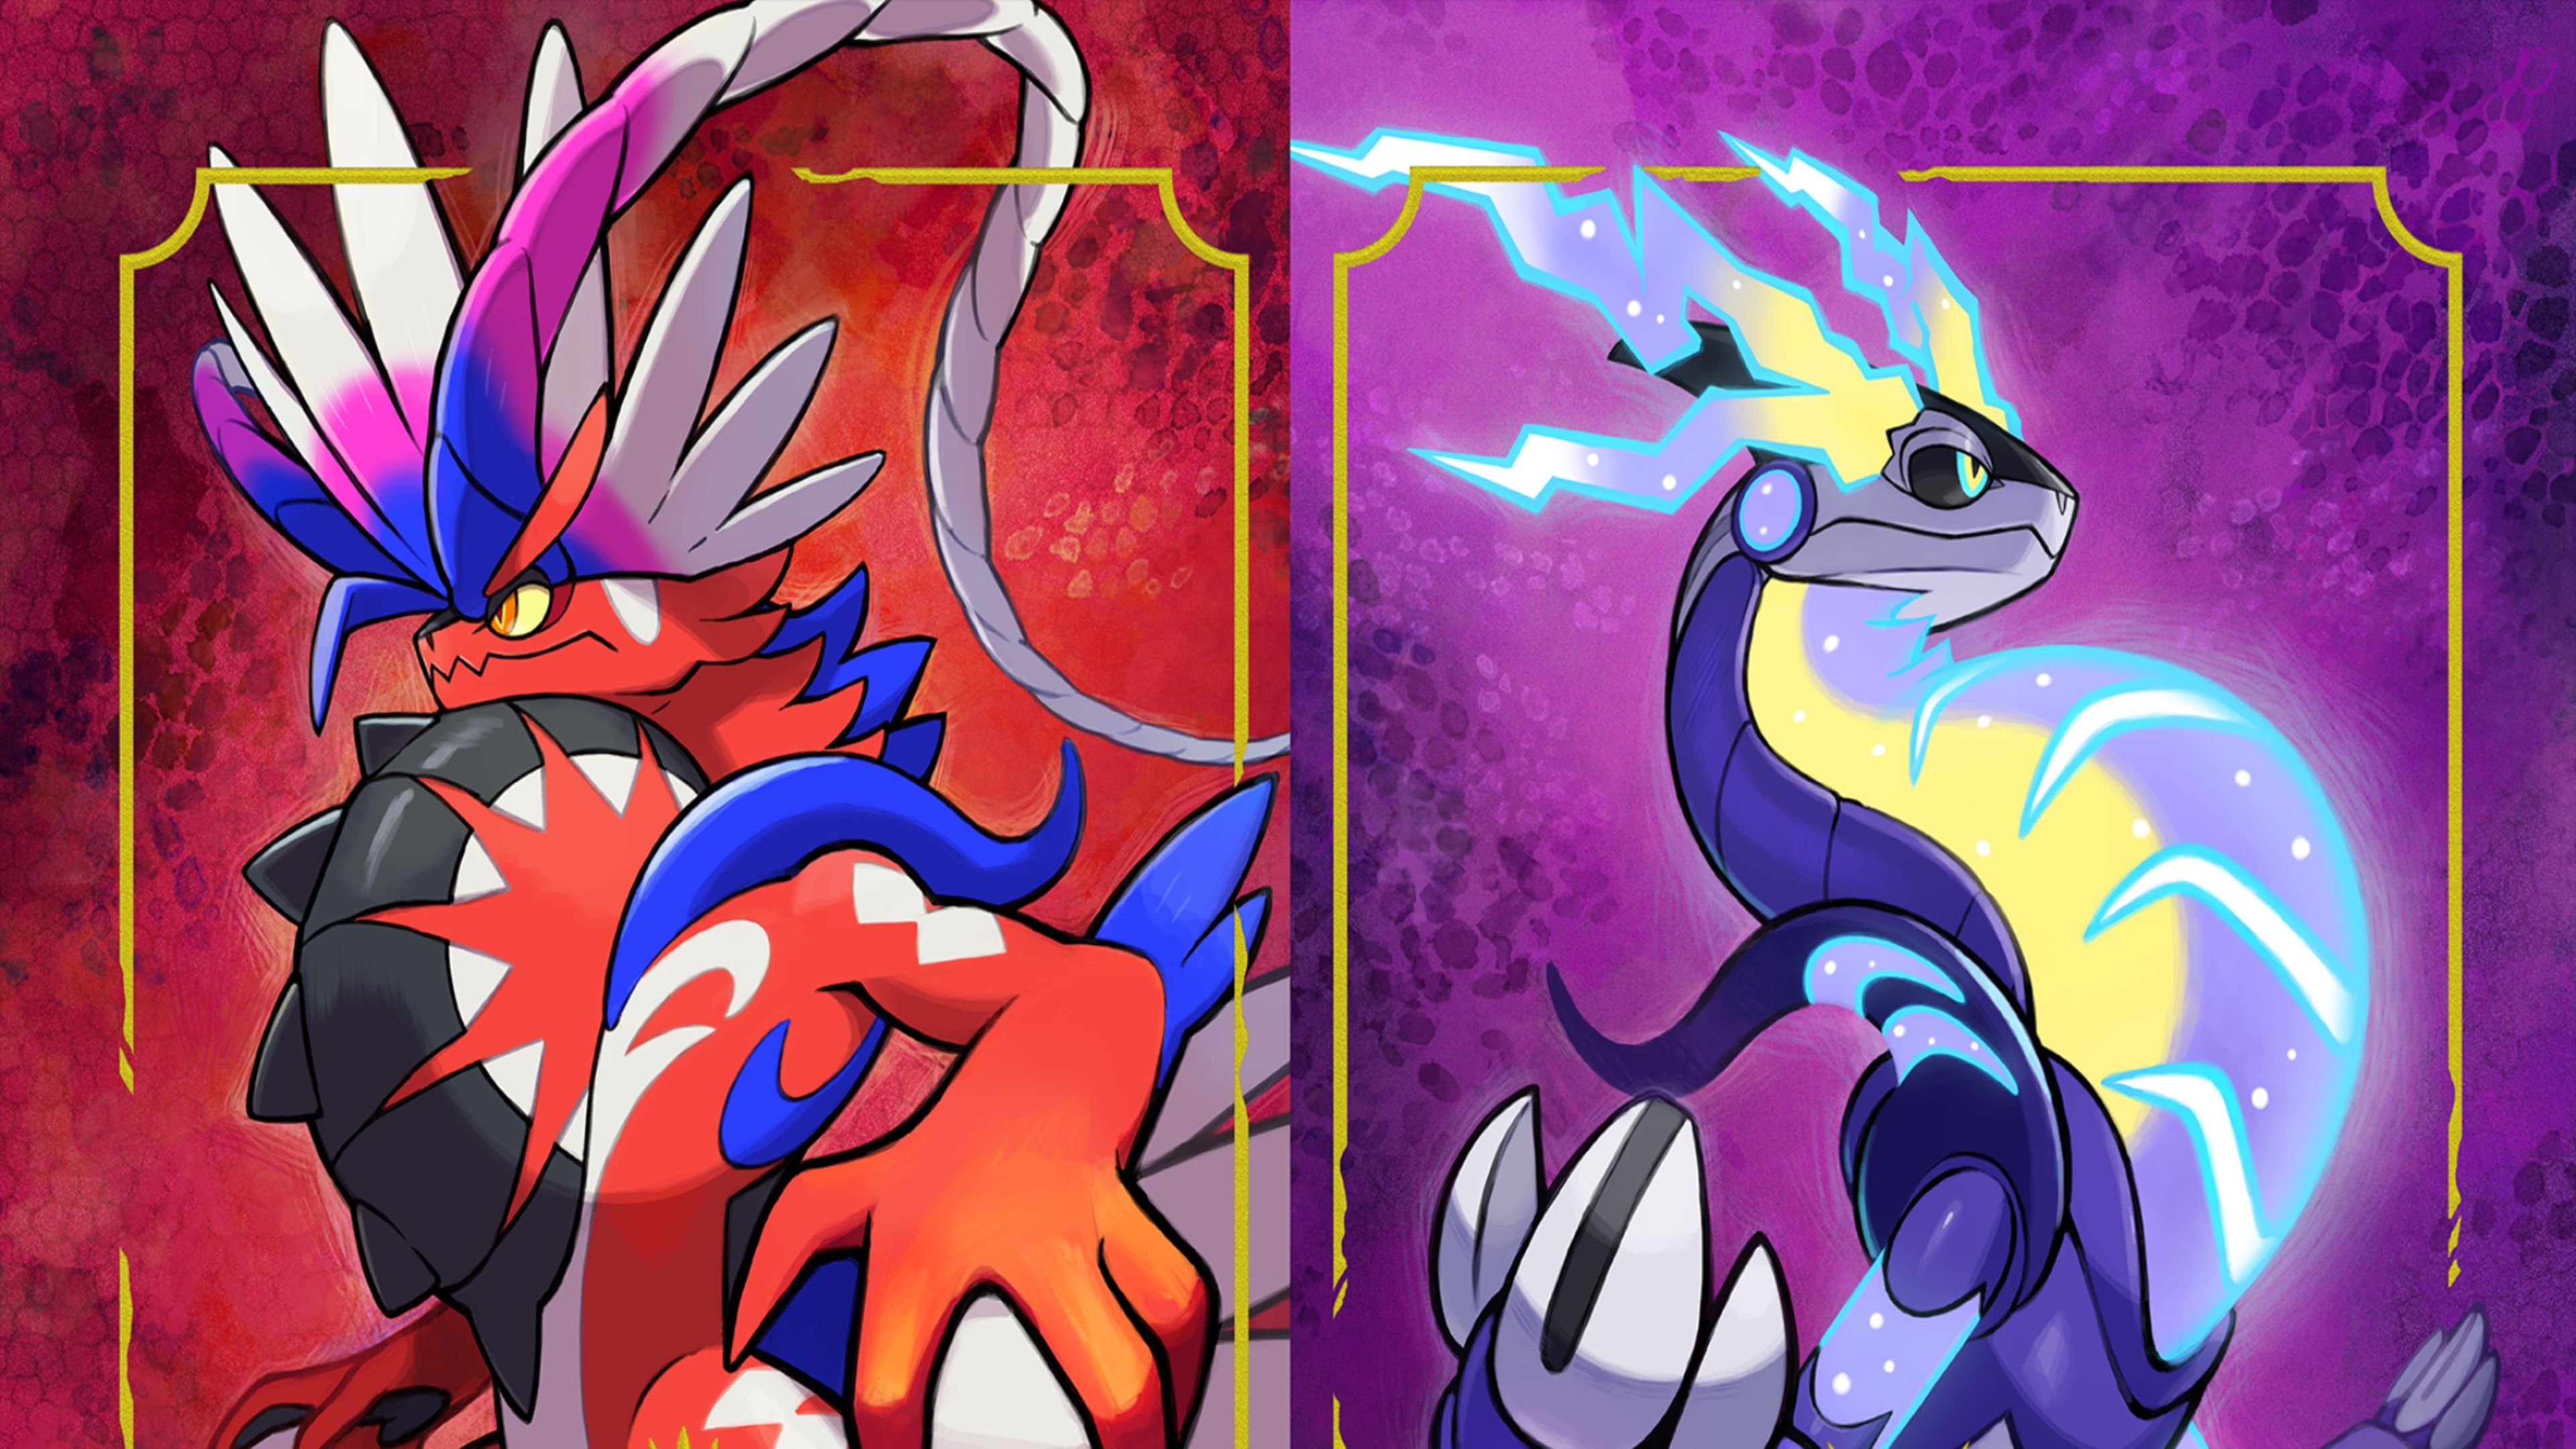 Guía Pokémon Escarlata y Púrpura: Orden y Gimnasios por nivel